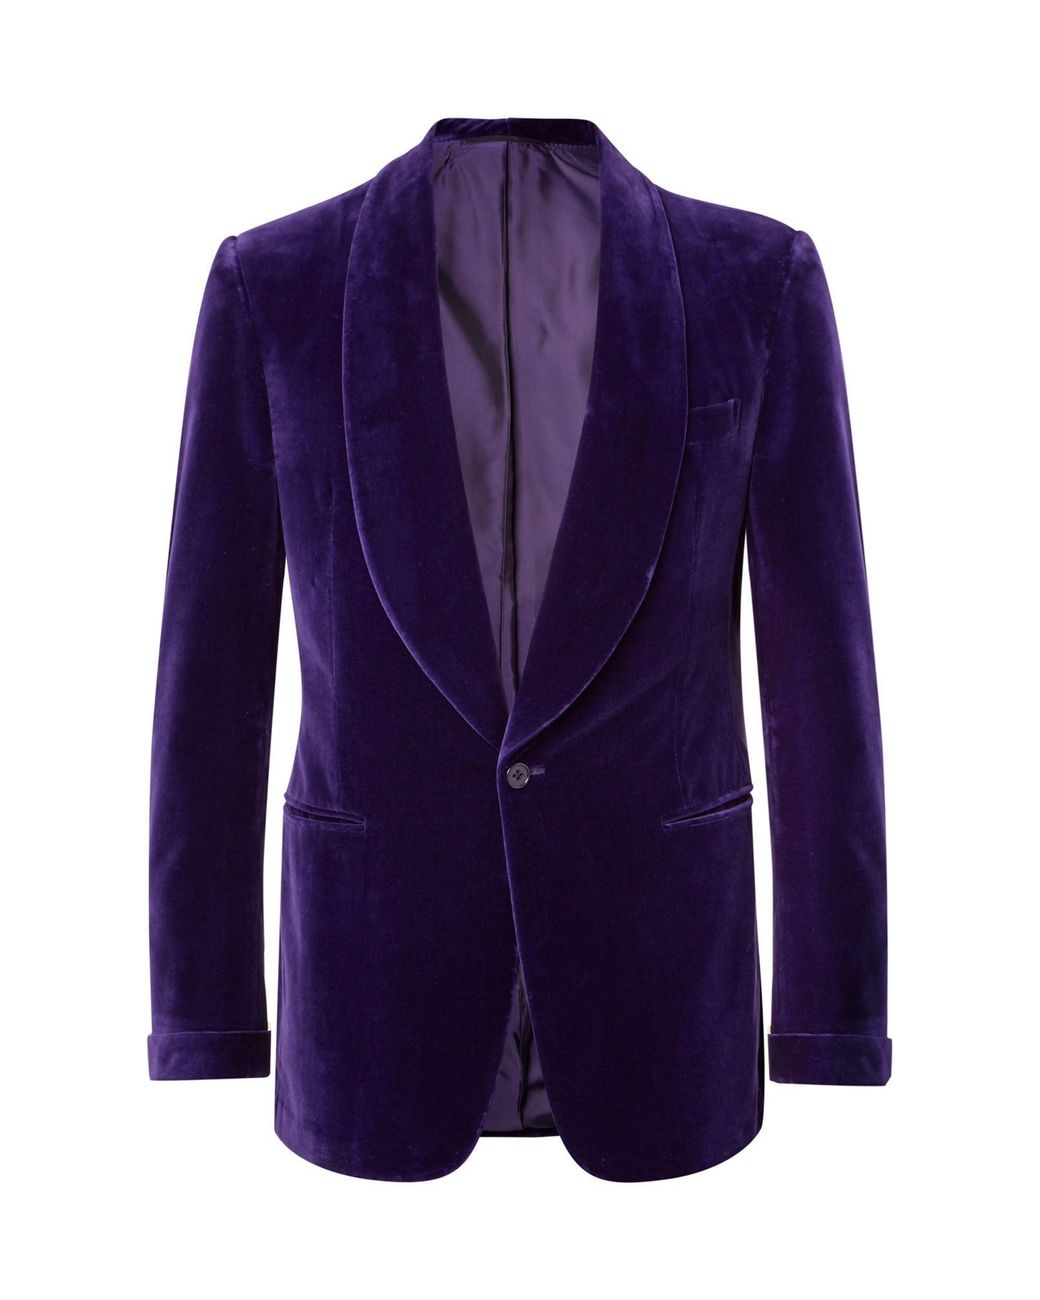 Ralph Lauren Purple Label Velvet Suit Jacket in Purple for Men - Lyst